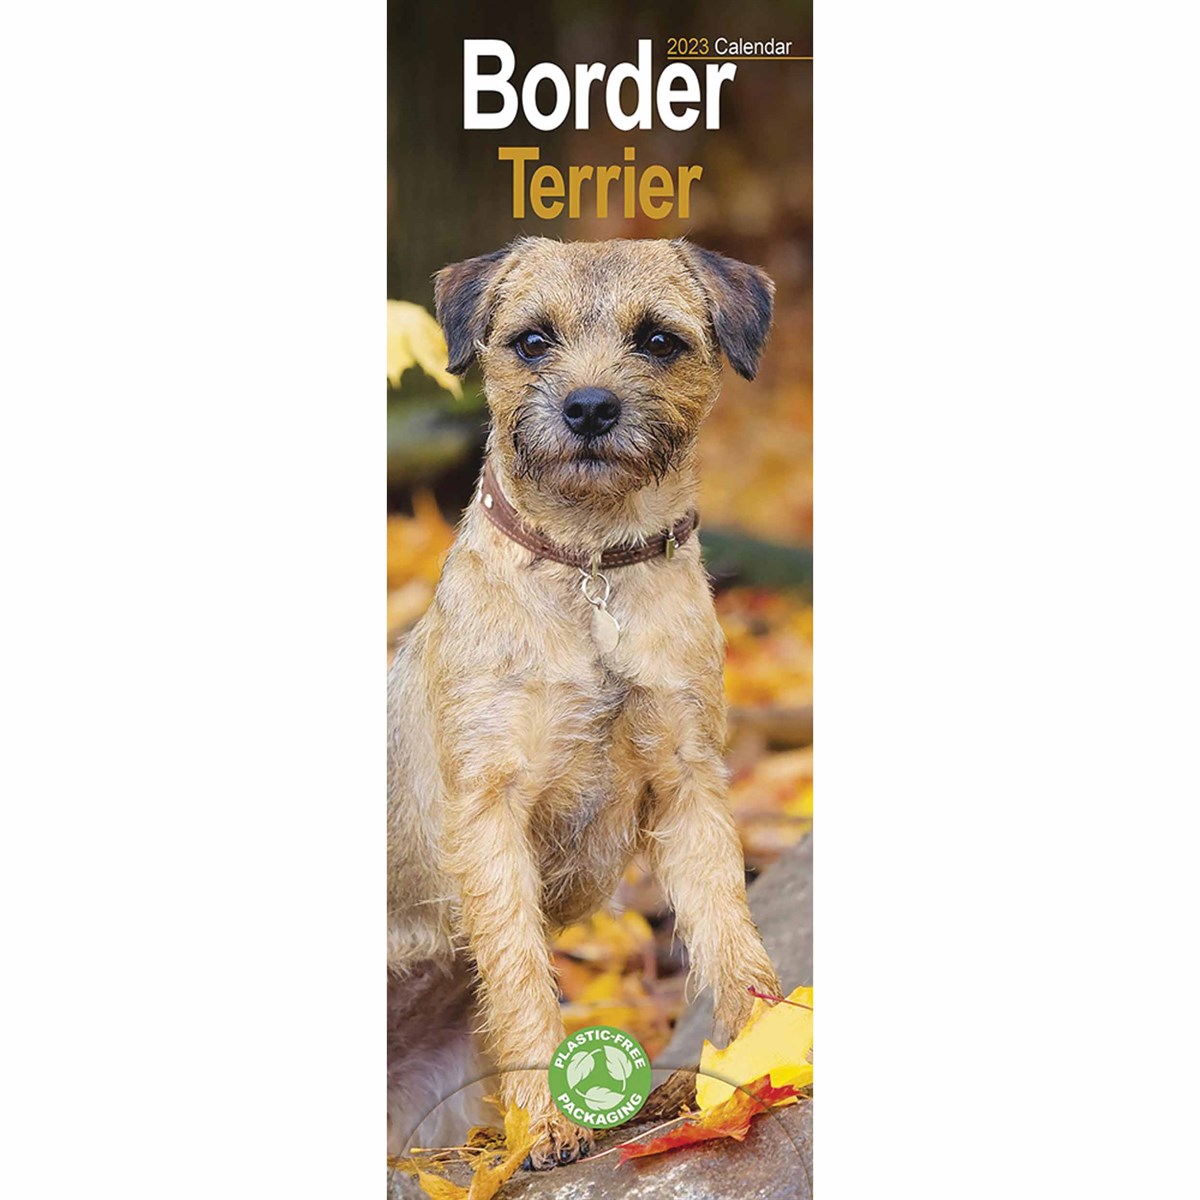 Border Terrier Slim 2023 Calendars